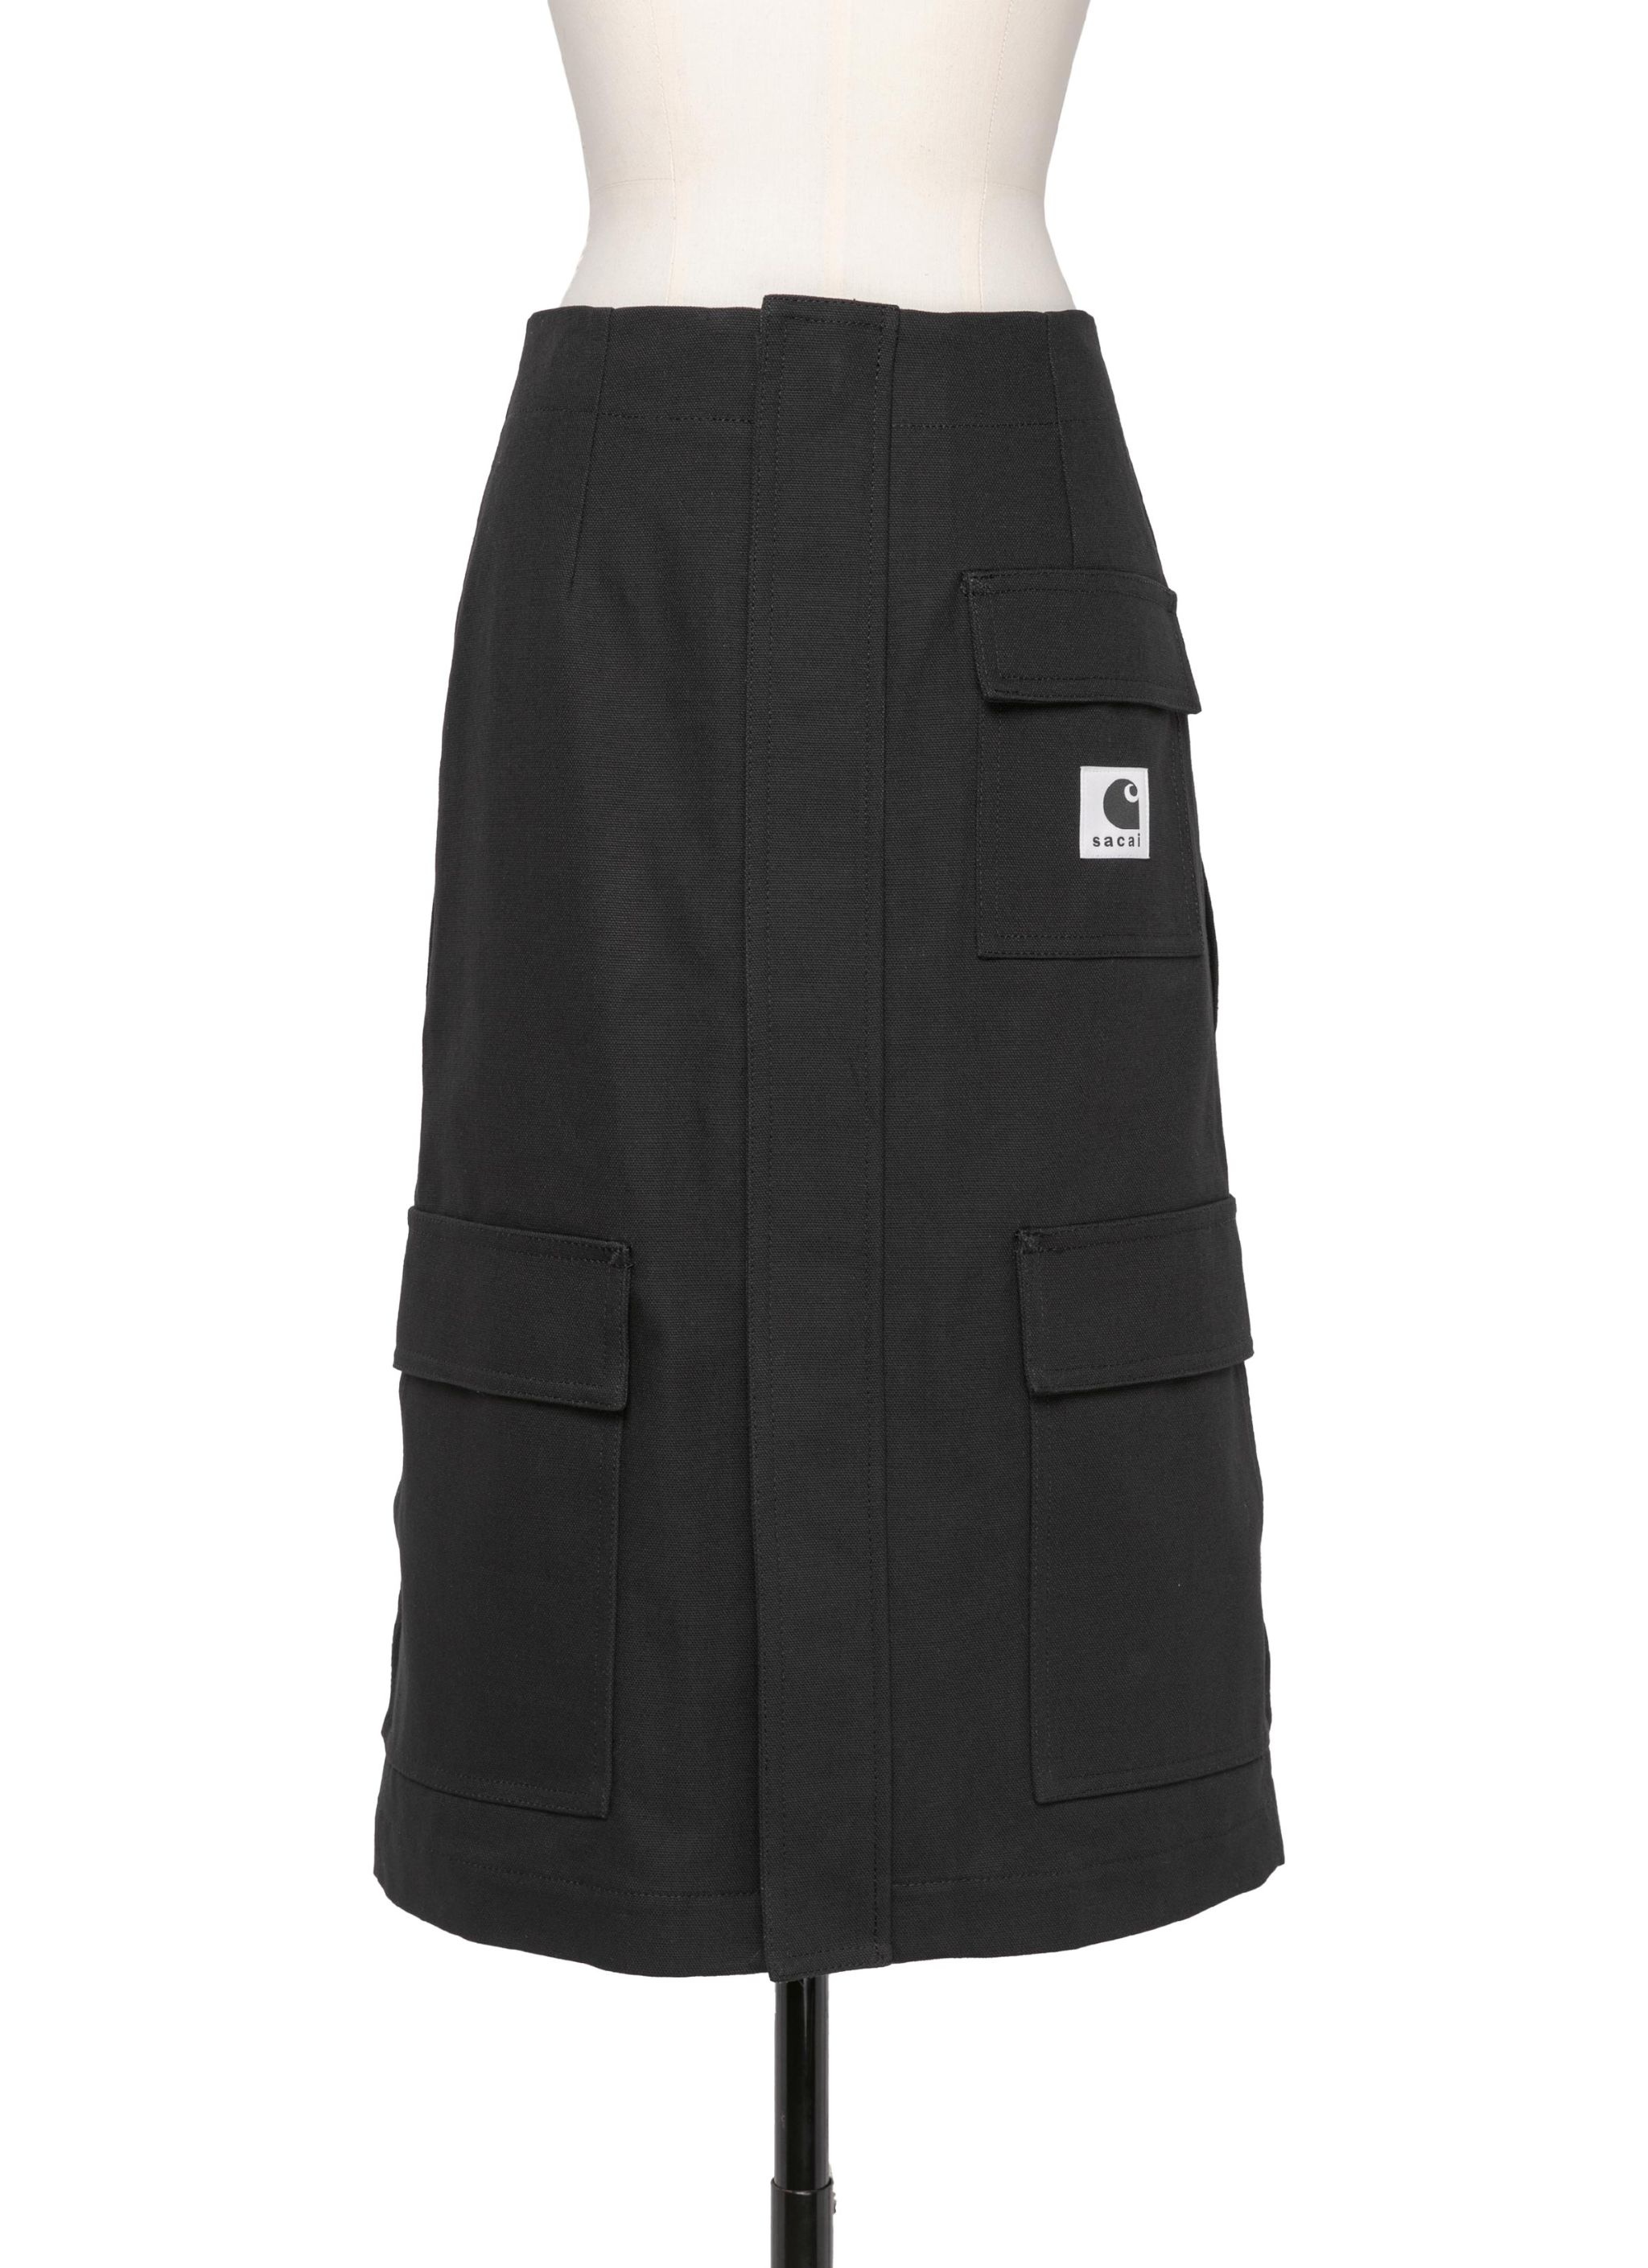 Carhartt WIP Duck Skirt - 2